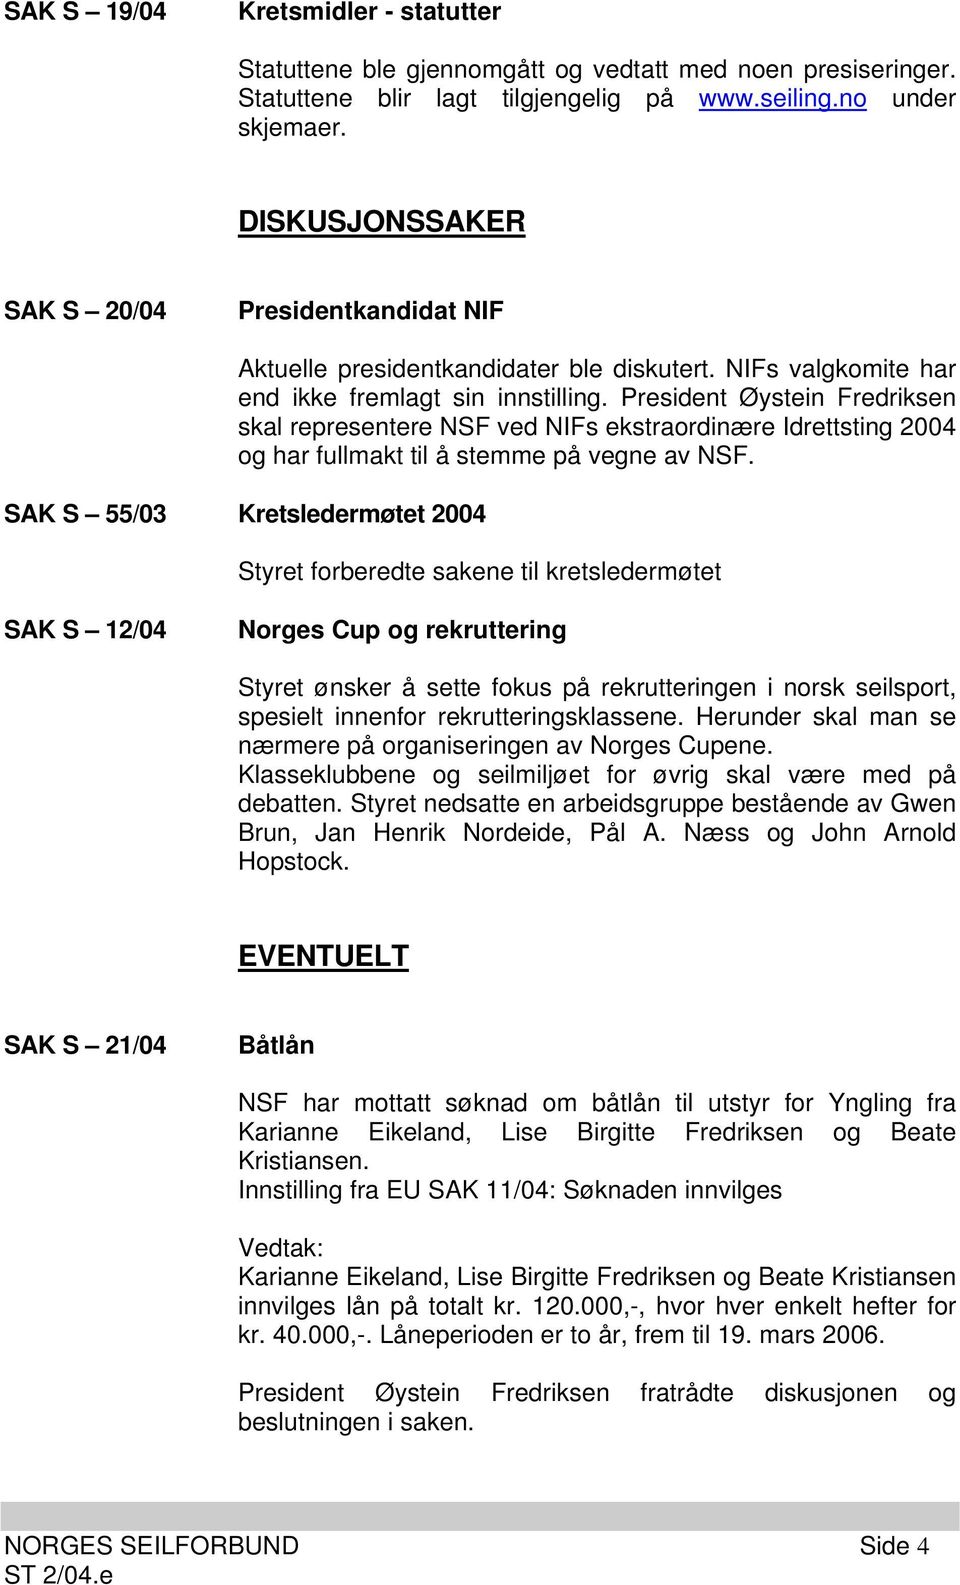 President Øystein Fredriksen skal representere NSF ved NIFs ekstraordinære Idrettsting 2004 og har fullmakt til å stemme på vegne av NSF.